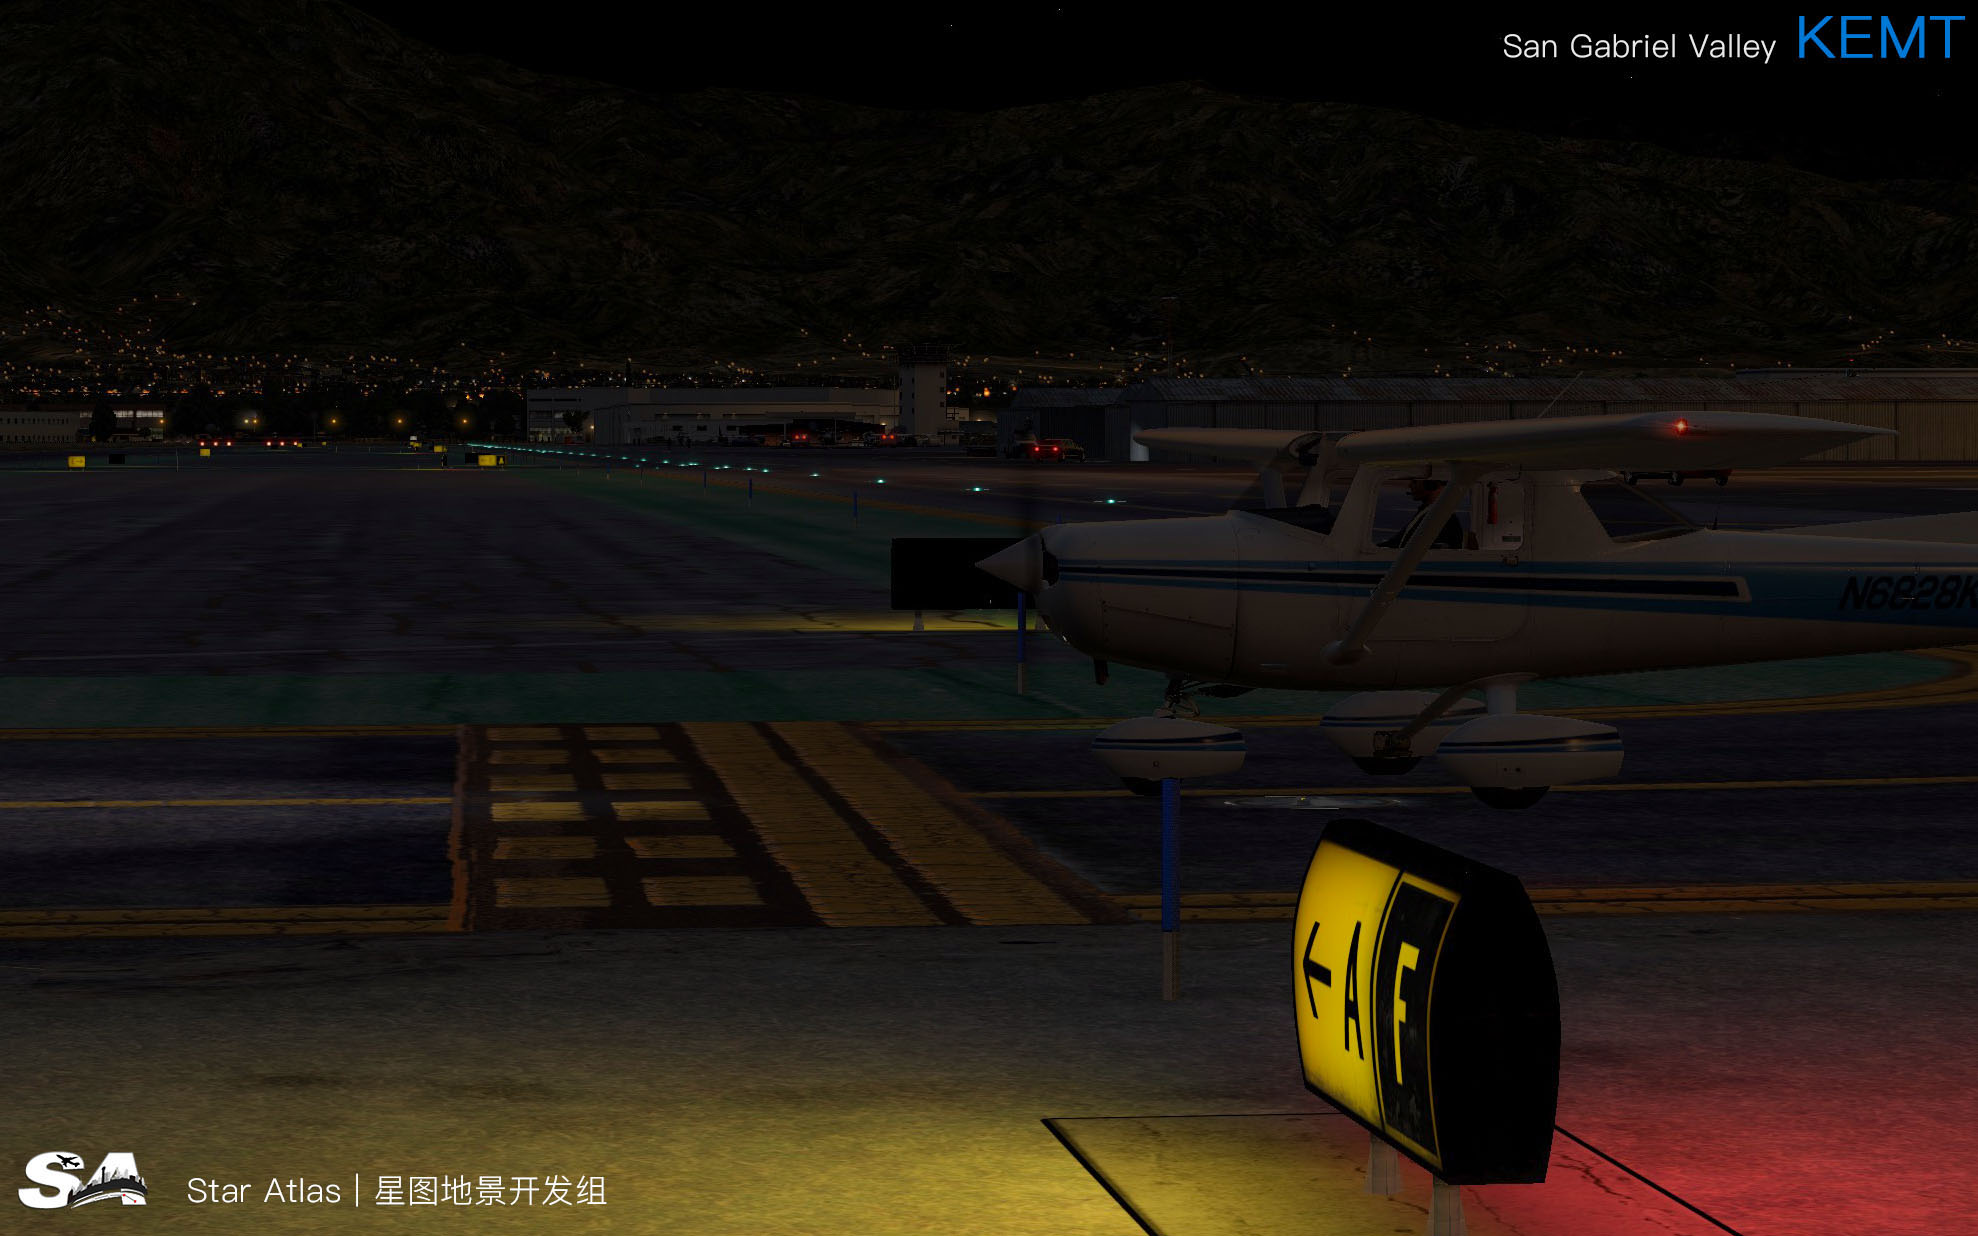 【X-Plane】KEMT-圣盖博谷机场 HD 1.0-6663 